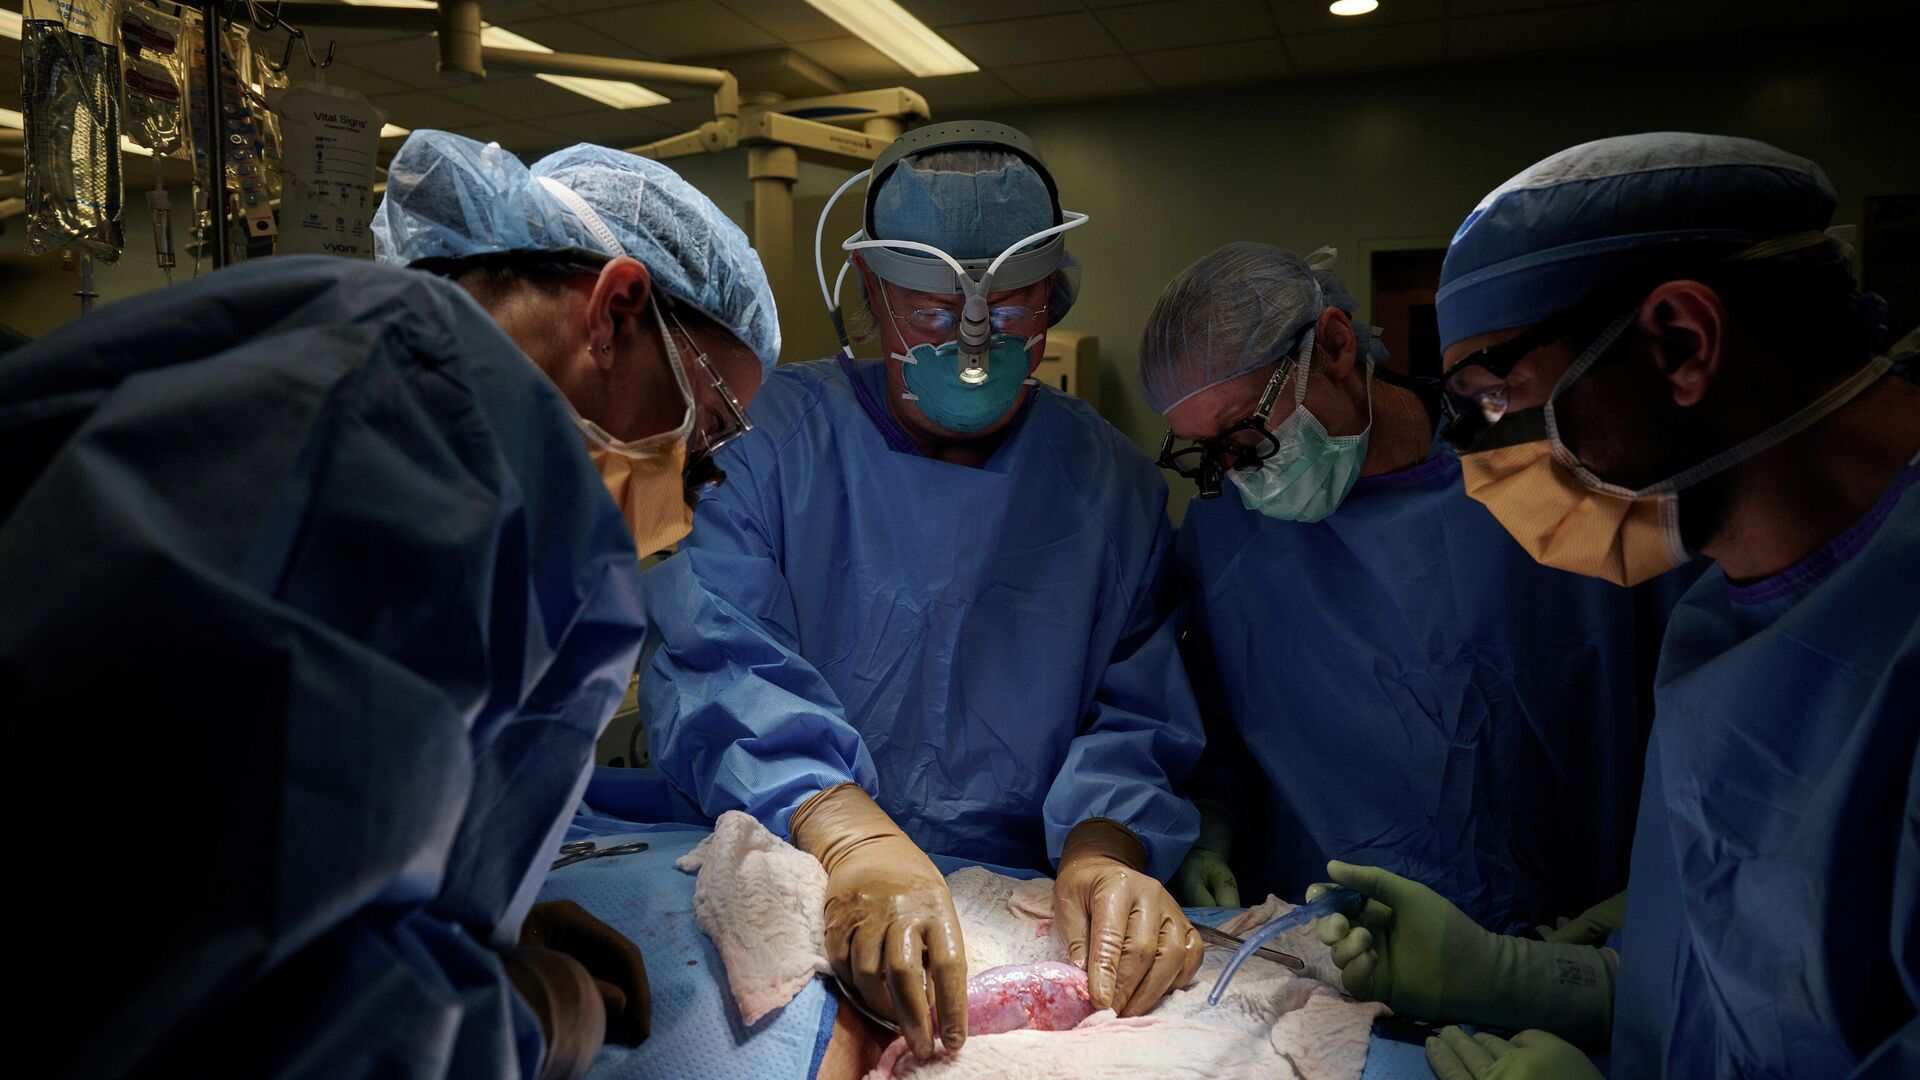 Операция по пересадке почки генно-модифицированной свиньи человеку в Медицинском центре Лангон при Университете Нью-Йорка - РИА Новости, 1920, 20.10.2021